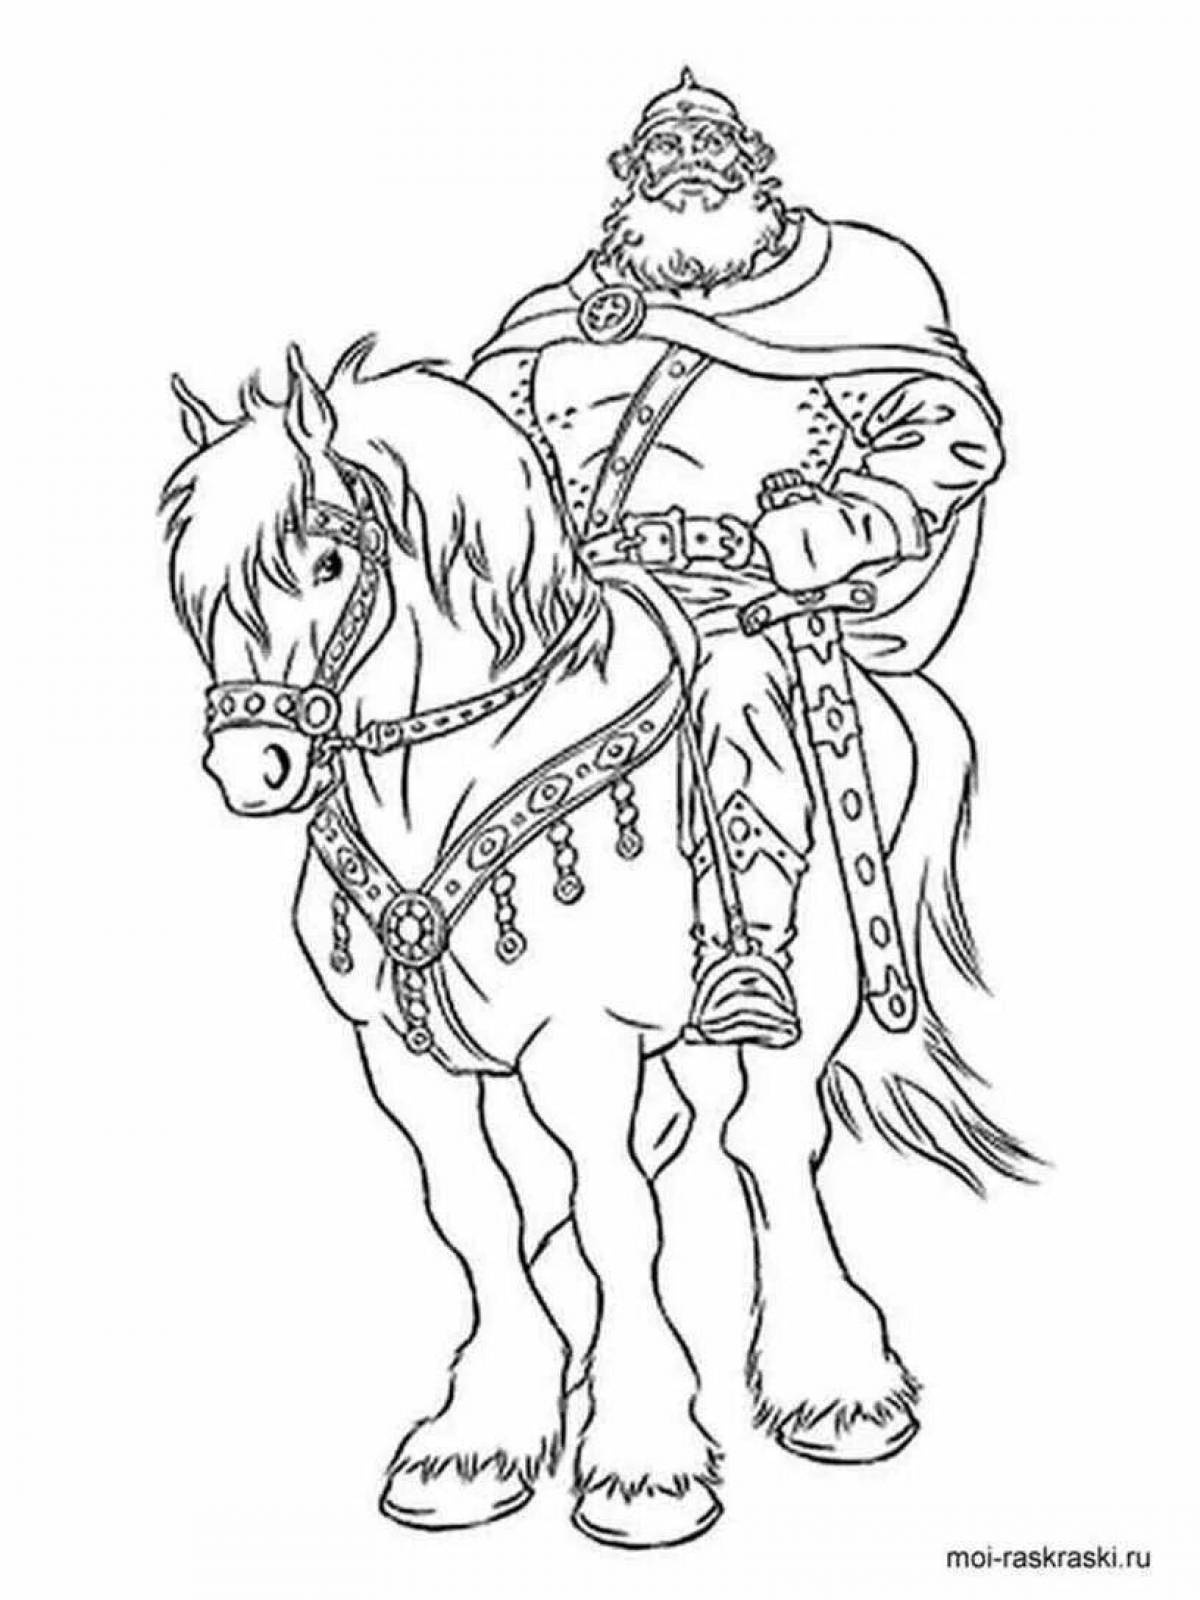 Ilya Muromets on horseback #4